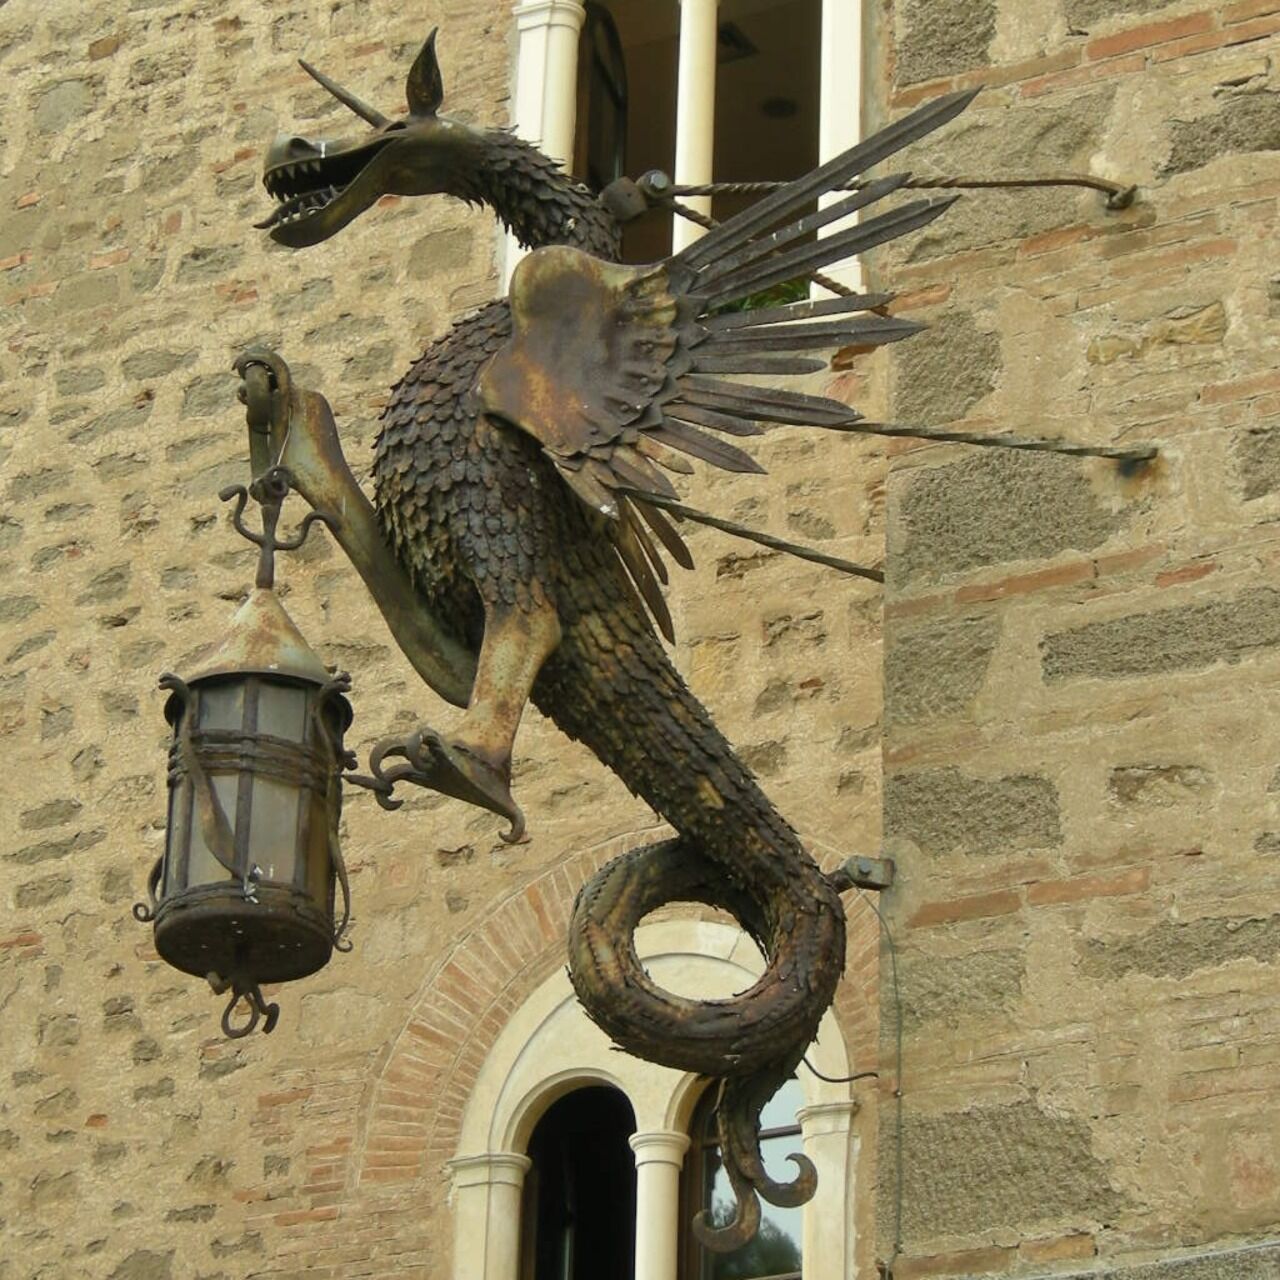 Il dragone portafiaccola sulle mura di Castello Pasquini a Castiglioncello di Rosignano Marittimo